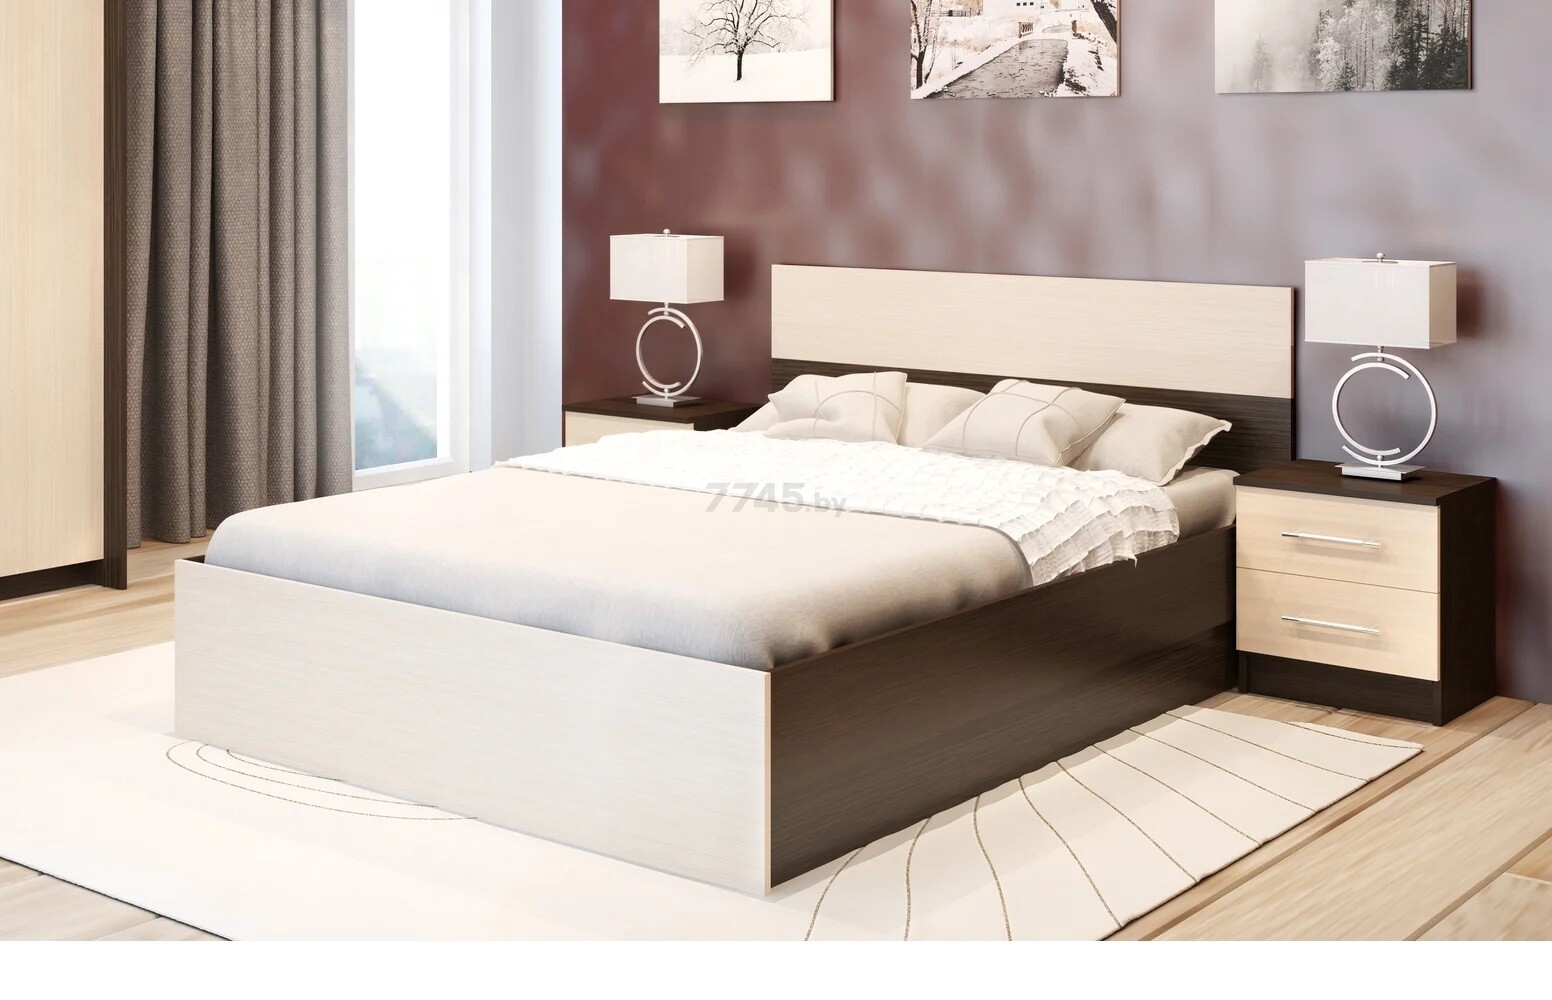 Двуспальная кровать ГОРИЗОНТ Юнона венге/дуб 160х200 см - Фото 3